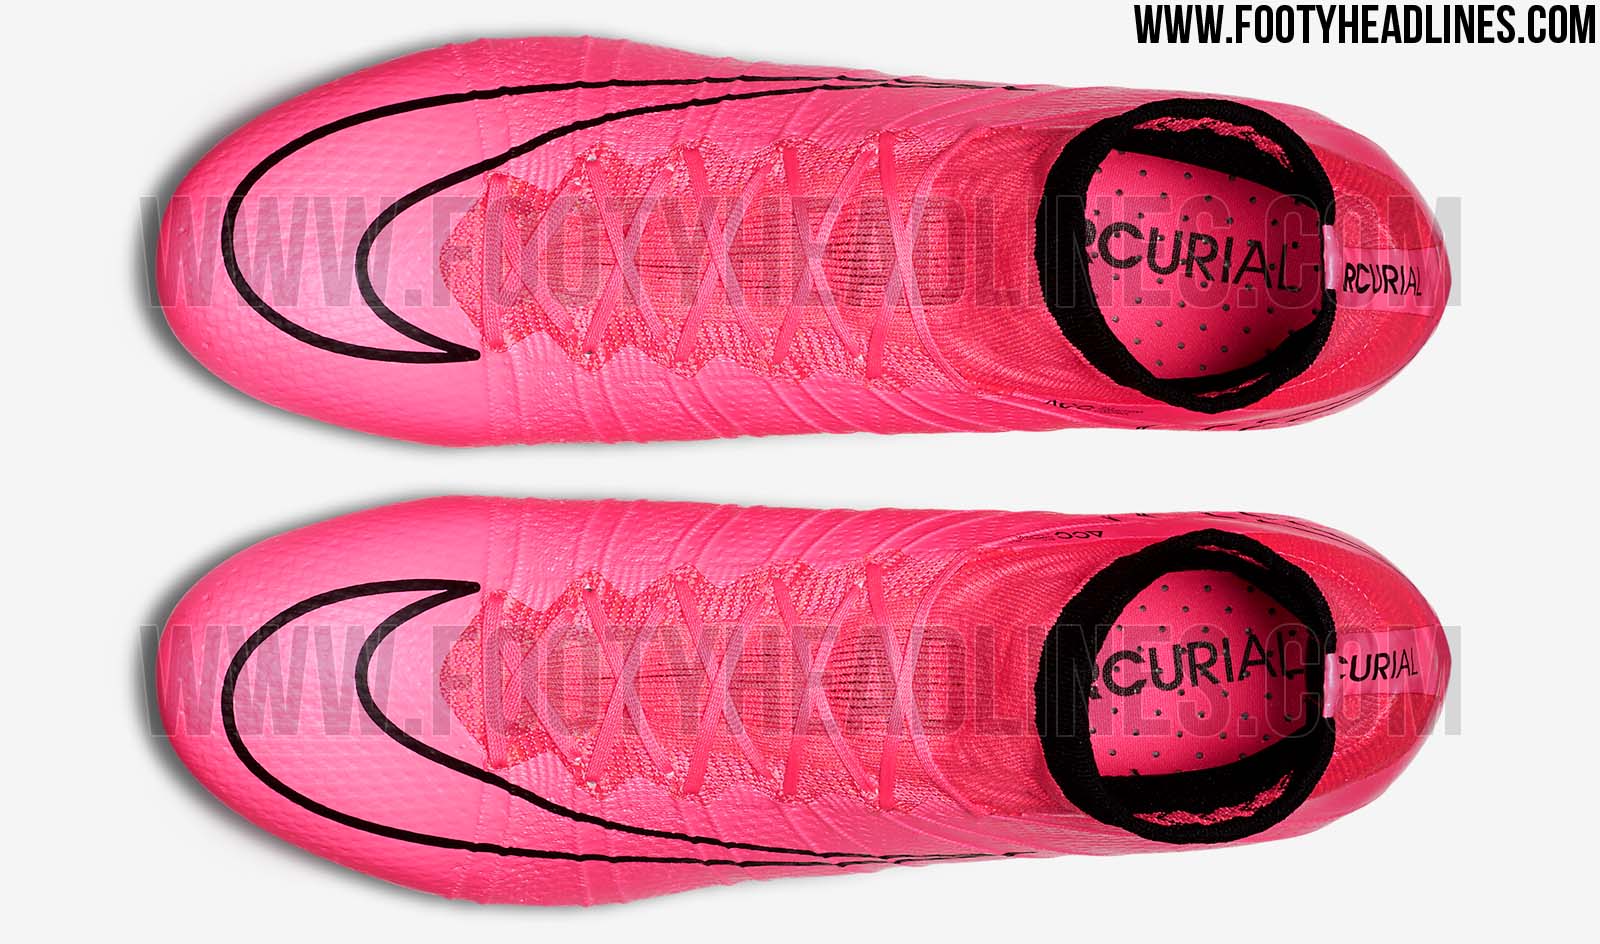 aardappel smog gebaar Pink Nike Mercurial Superfly 2015-2016 Boots Released - Footy Headlines